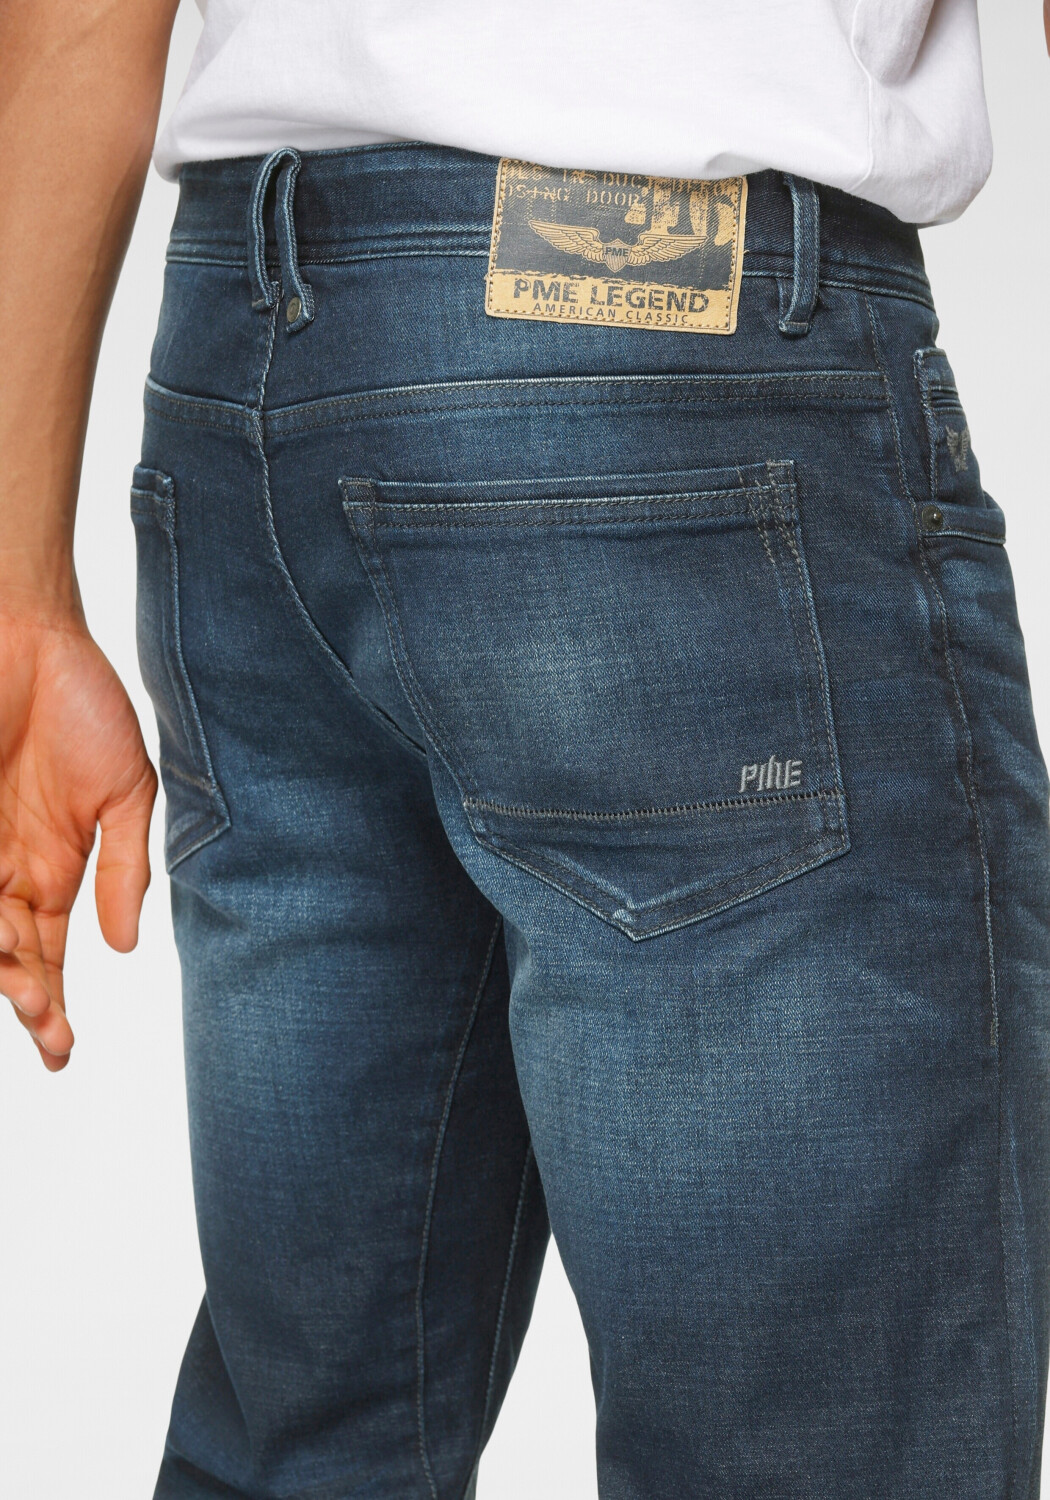 Tailwheel Jeans PME | dark € Legend Fit wash 49,99 Slim bei Preisvergleich ab